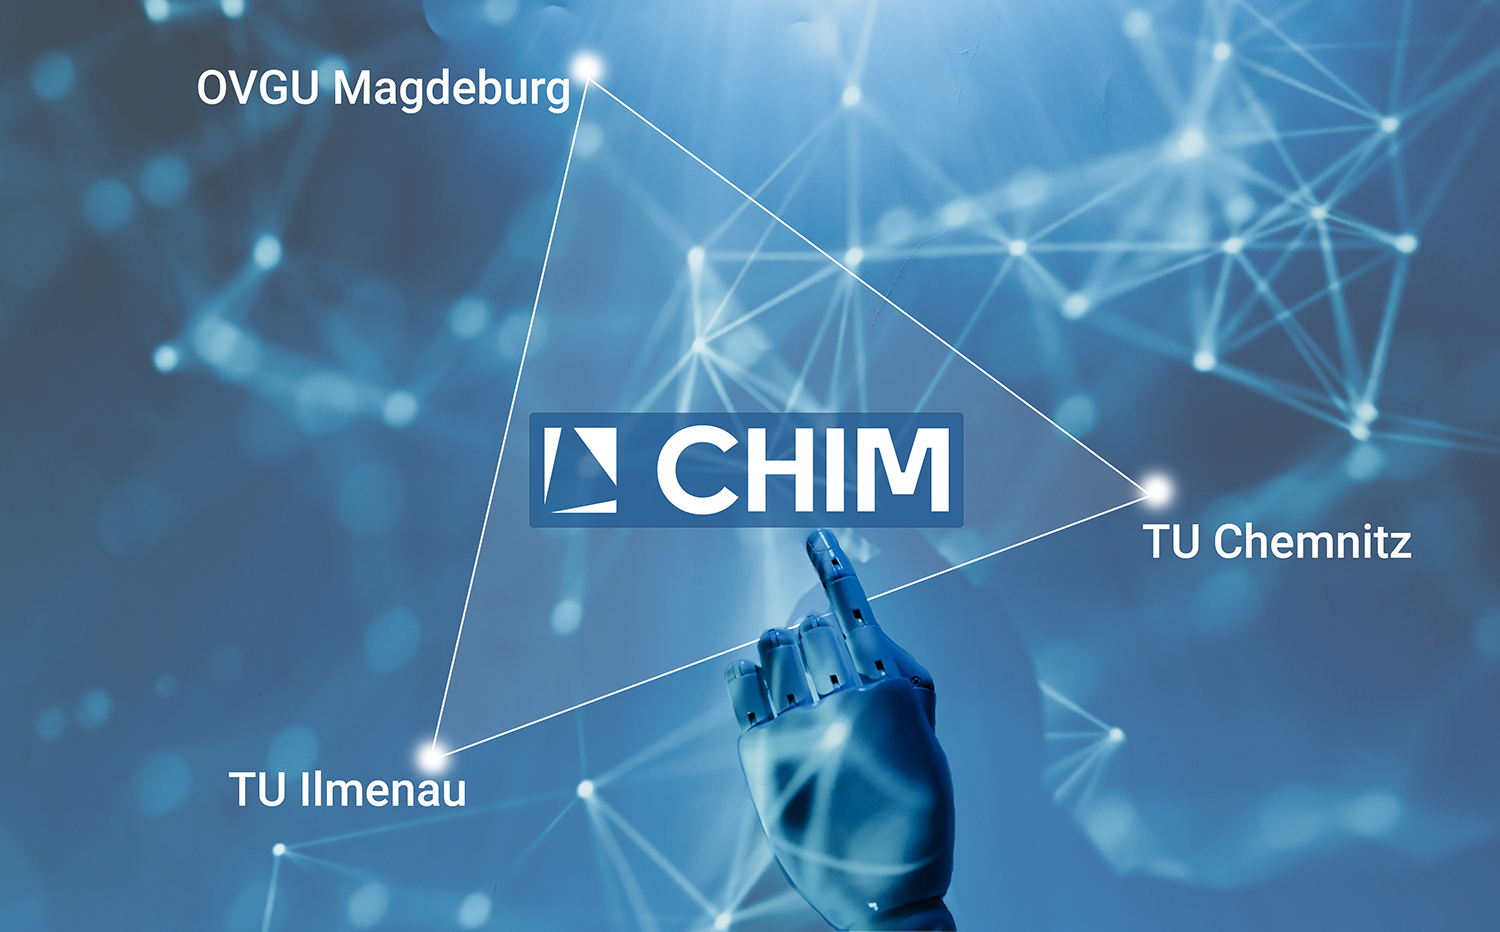 Forschungs- und Innovationsnetzwerk Chemnitz-Ilmenau-Magdeburg (CHIM)